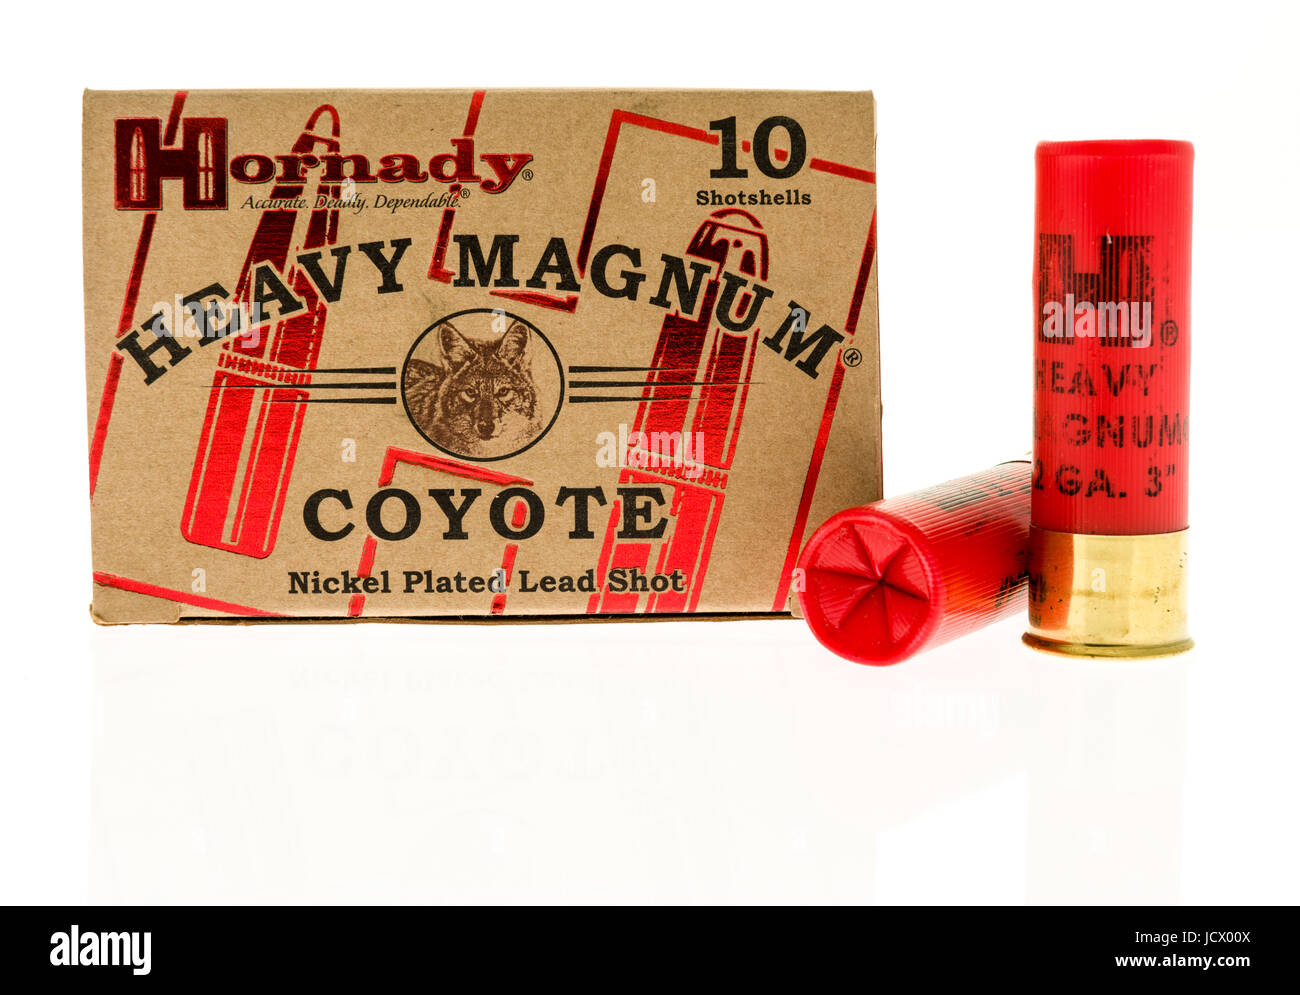 Winneconne, WI -11 juin 2017 : une boîte de munitions Hornady magnum lourds coyote sur un fond isolé Banque D'Images